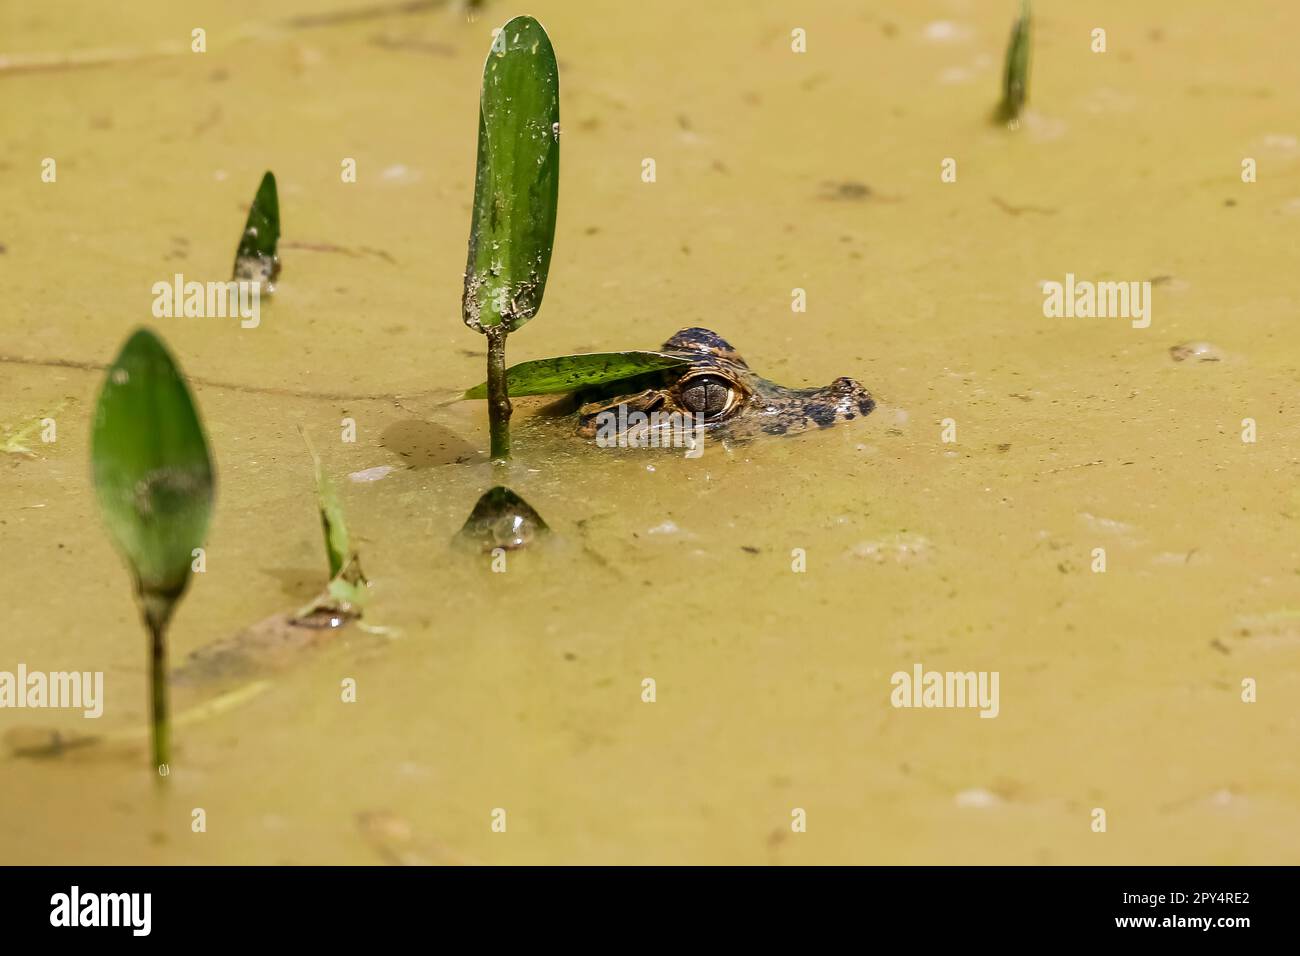 Testa di un piccolo caimano Yacare sulla superficie di un fiume fangoso con alcune piante verdi, Pantanal Wetlands, Mato Grosso, Brasile Foto Stock